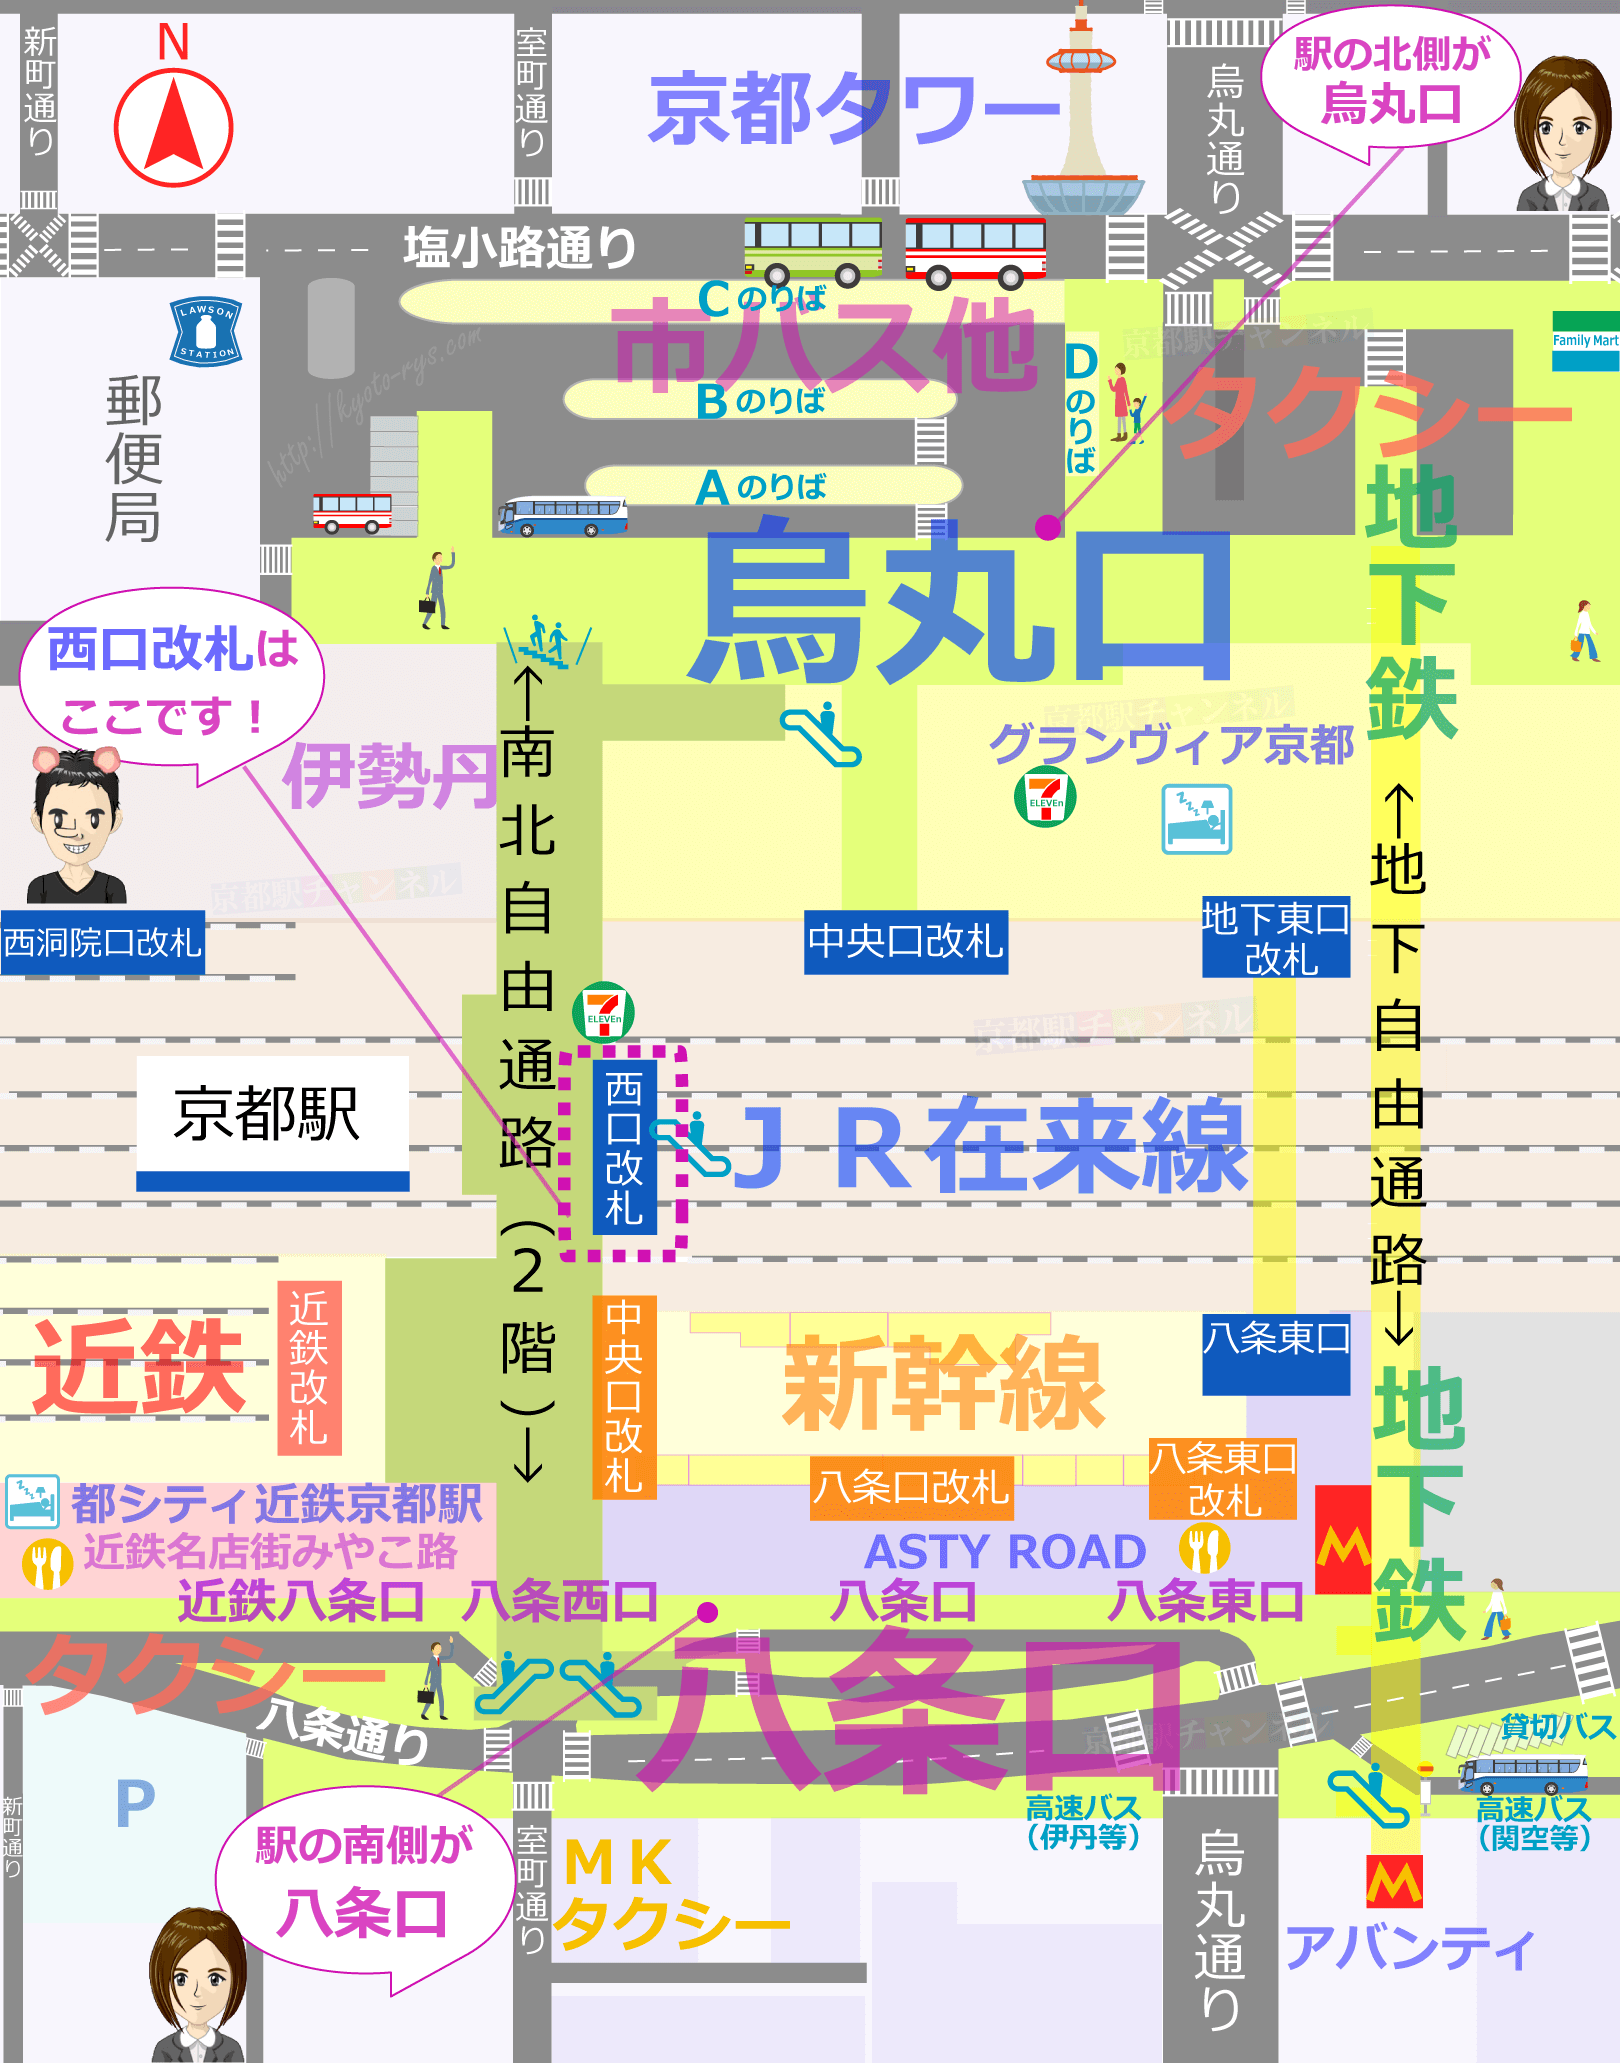 京都駅の構内図と西口改札のマップ